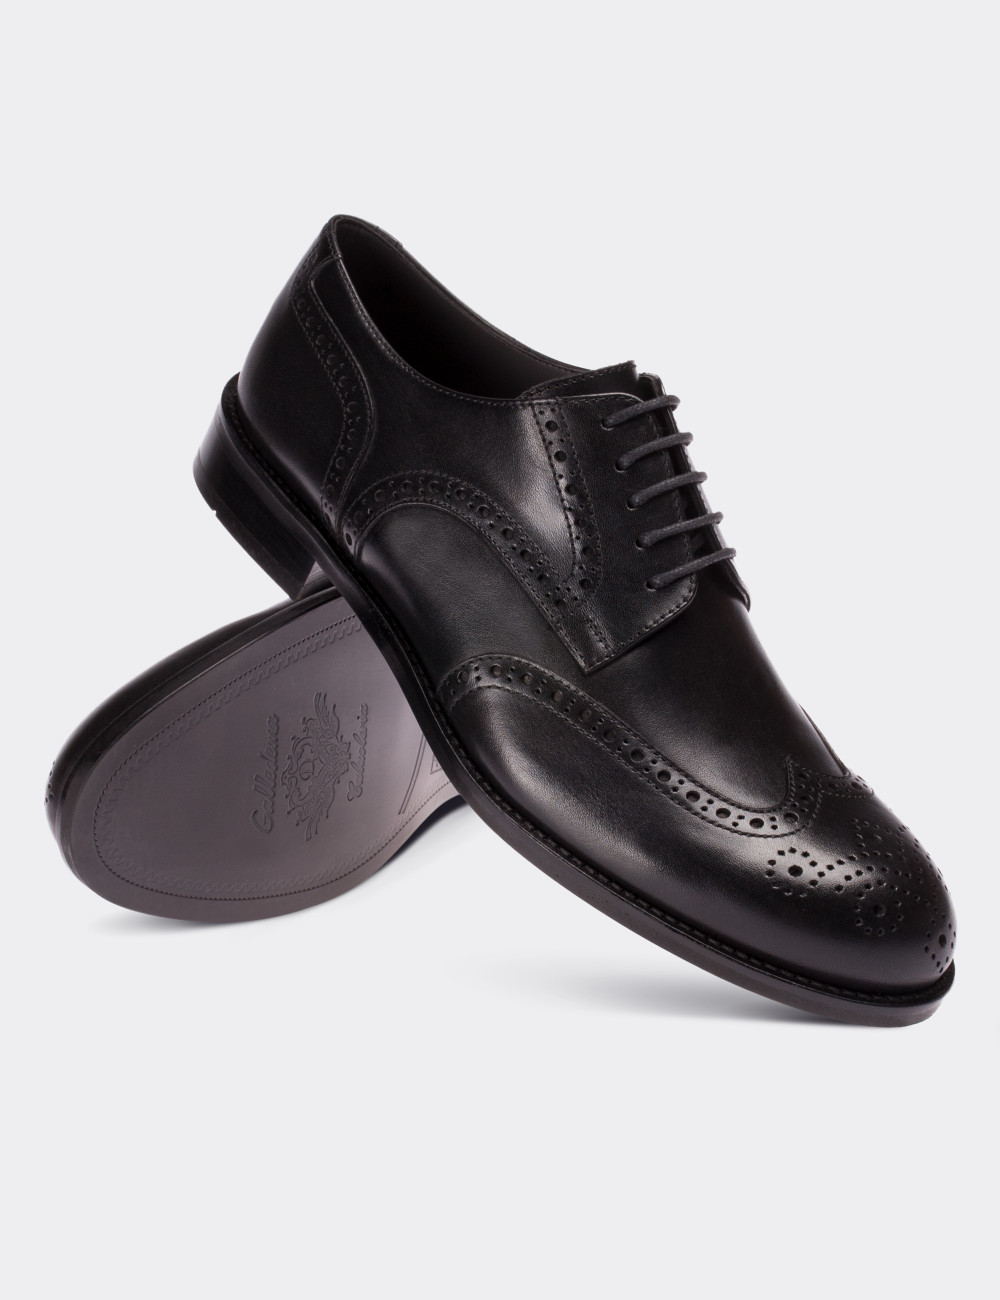 Hakiki Deri Siyah Klasik Erkek Ayakkabı - 01696MSYHM01